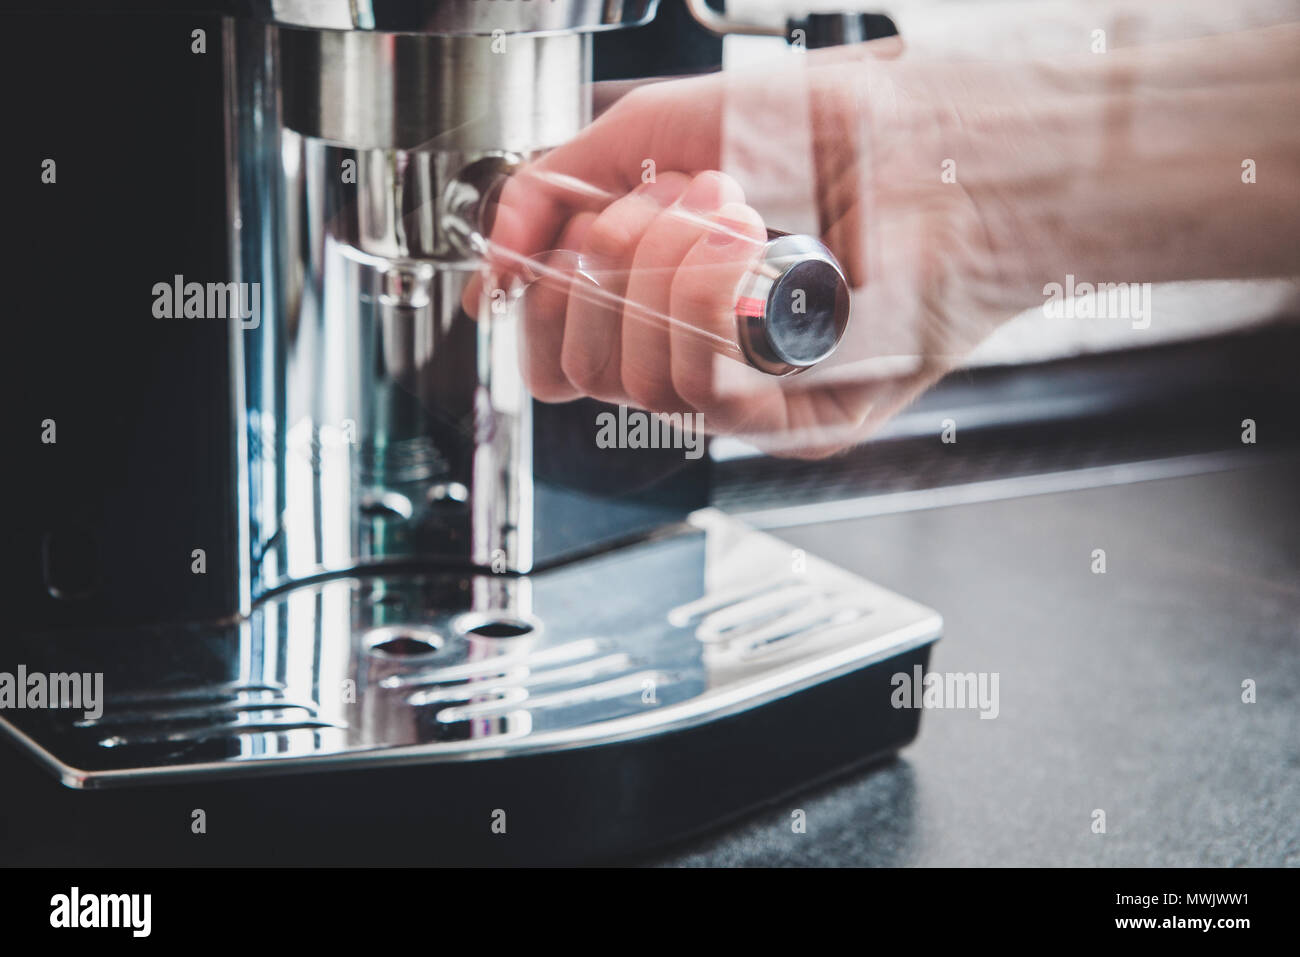 Dispensador de cafe fotografías e imágenes de alta resolución - Página 2 -  Alamy